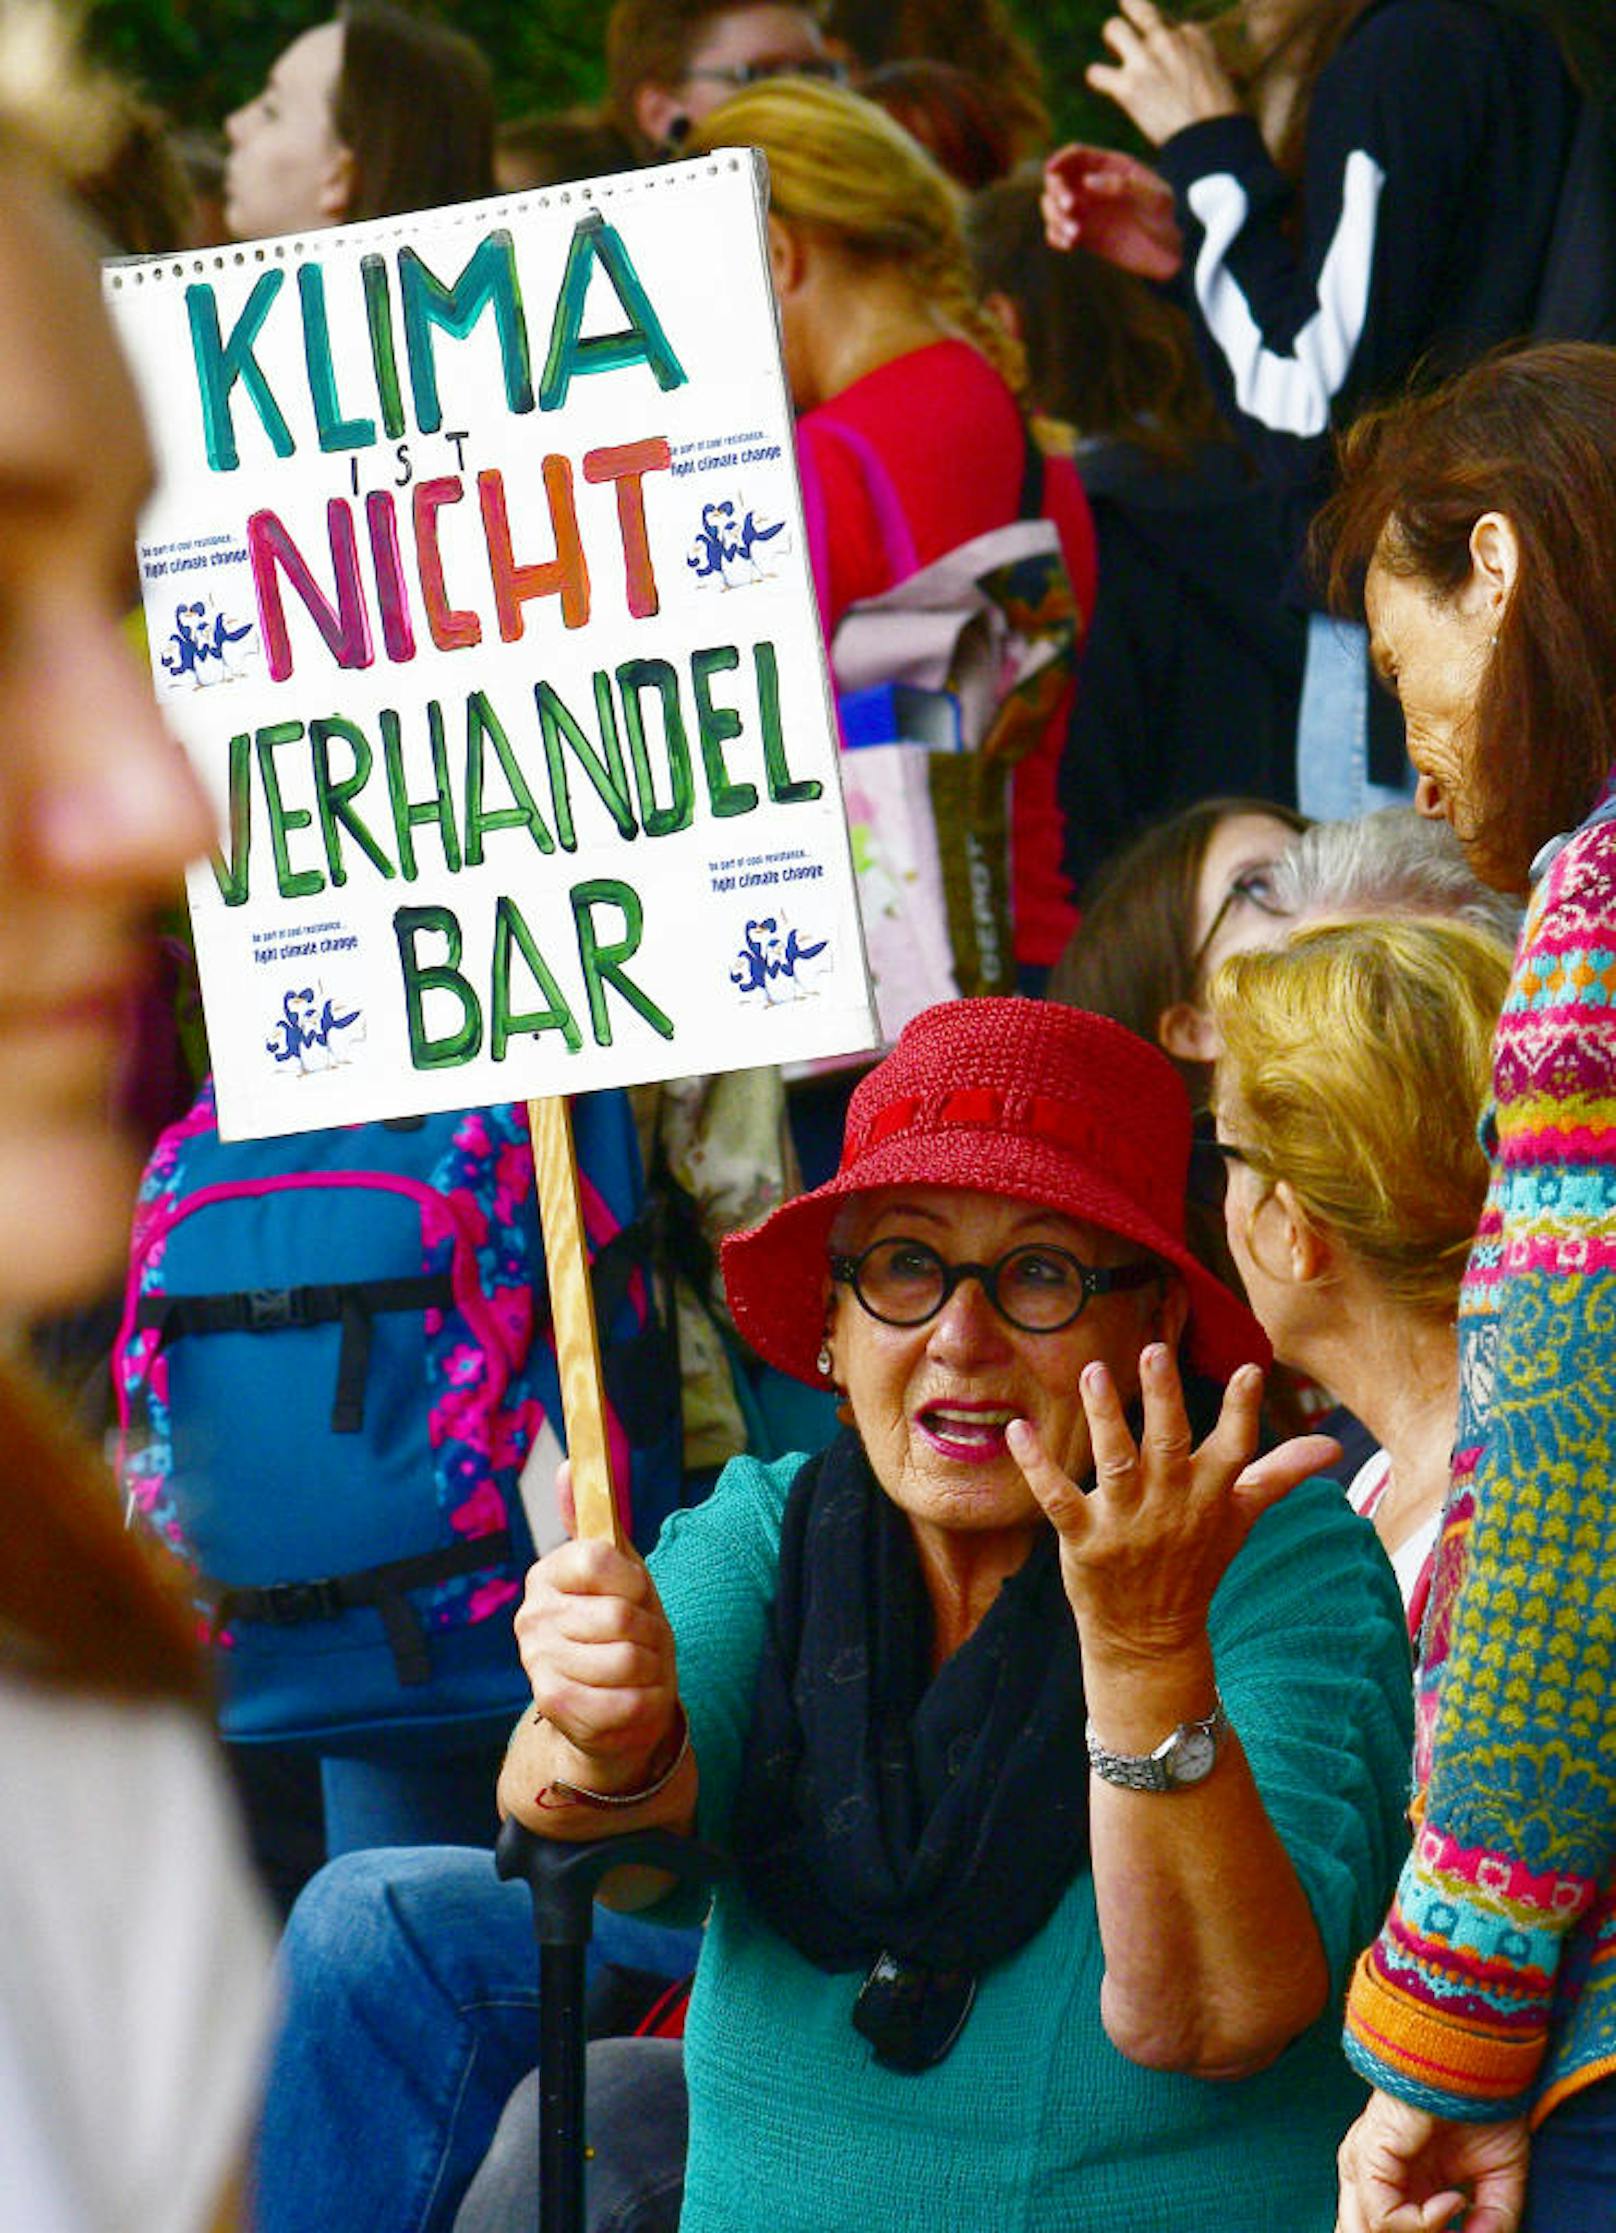 Teilnehmer der weltweiten Klima-Protestaktion "Earth Strike" in Wien. Allein in Österreich sollen laut Veranstaltern an die 150.000 Menschen auf der Straße gewesen sein. 